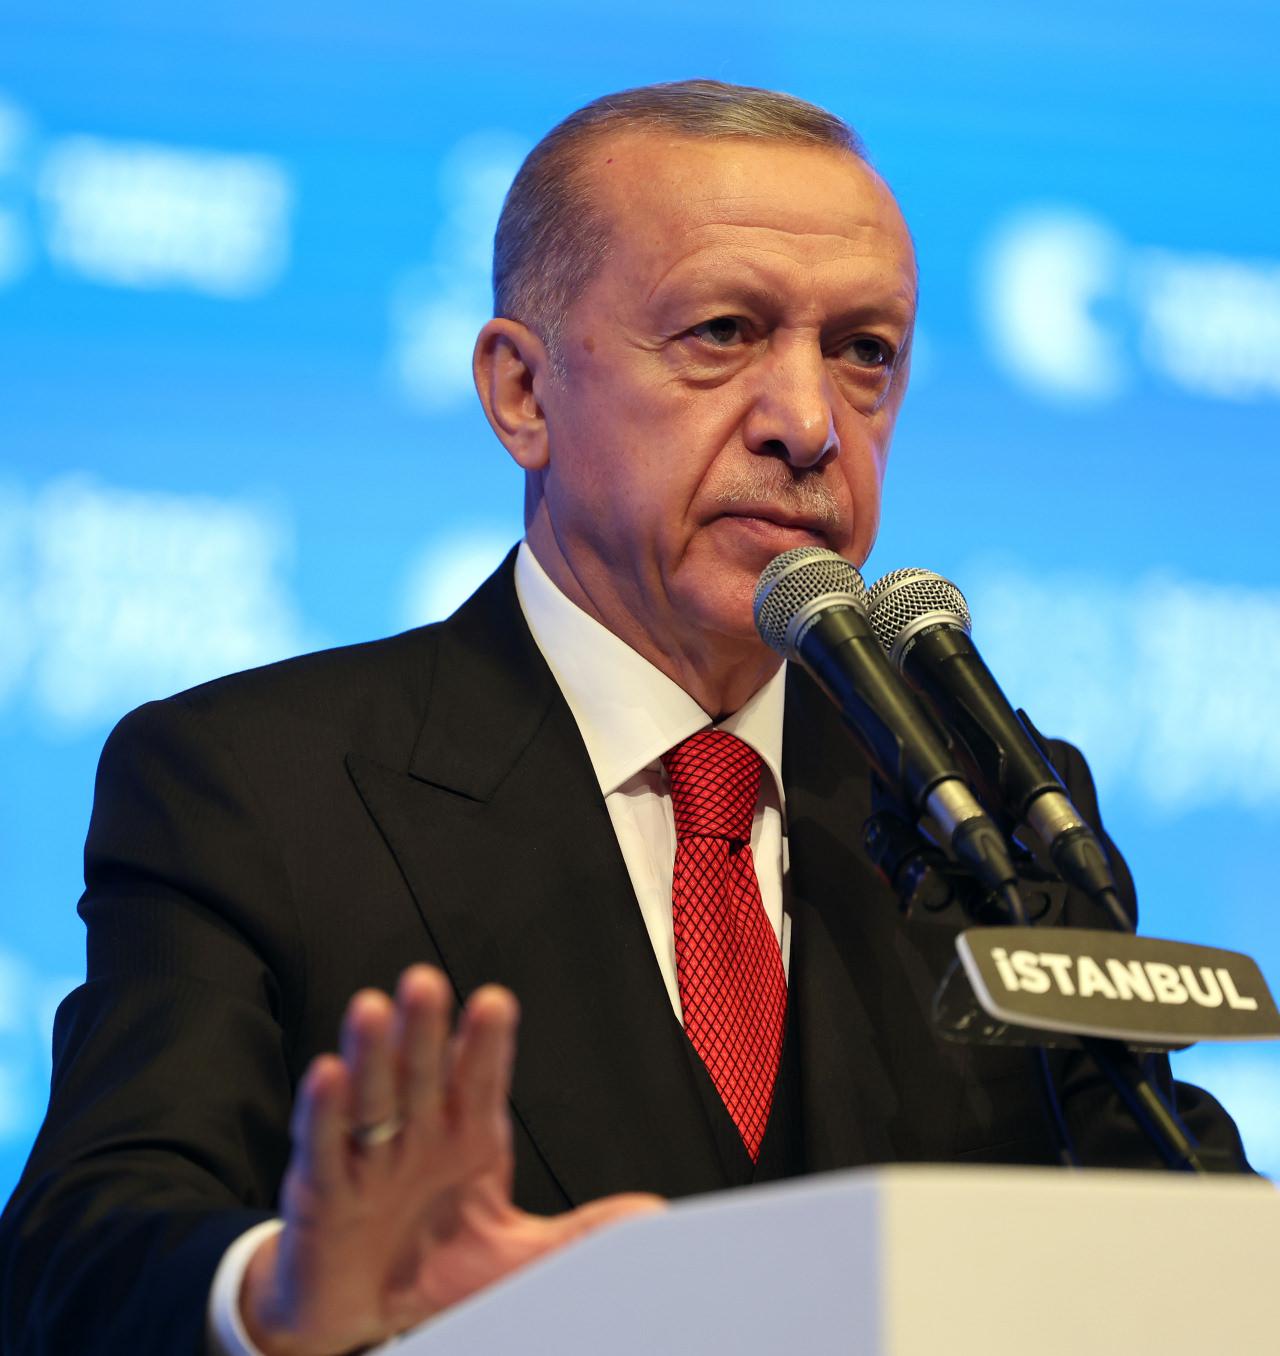 Cumhurbaşkanı Erdoğan'dan Kılıçdaroğlu'na tepki: İspatlayamazsan namertsin